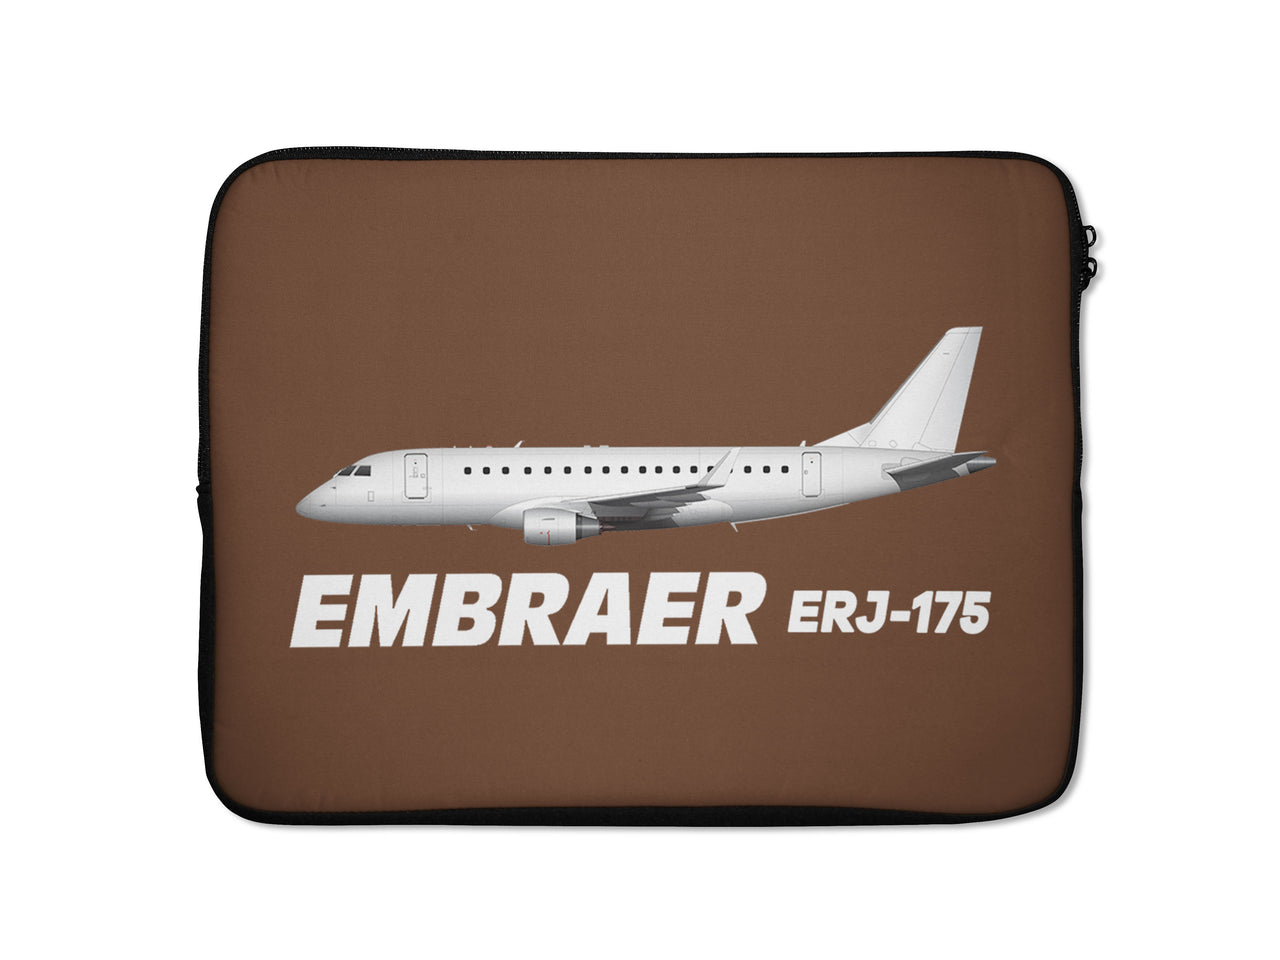 The Embraer ERJ-175 Designed Laptop & Tablet Cases